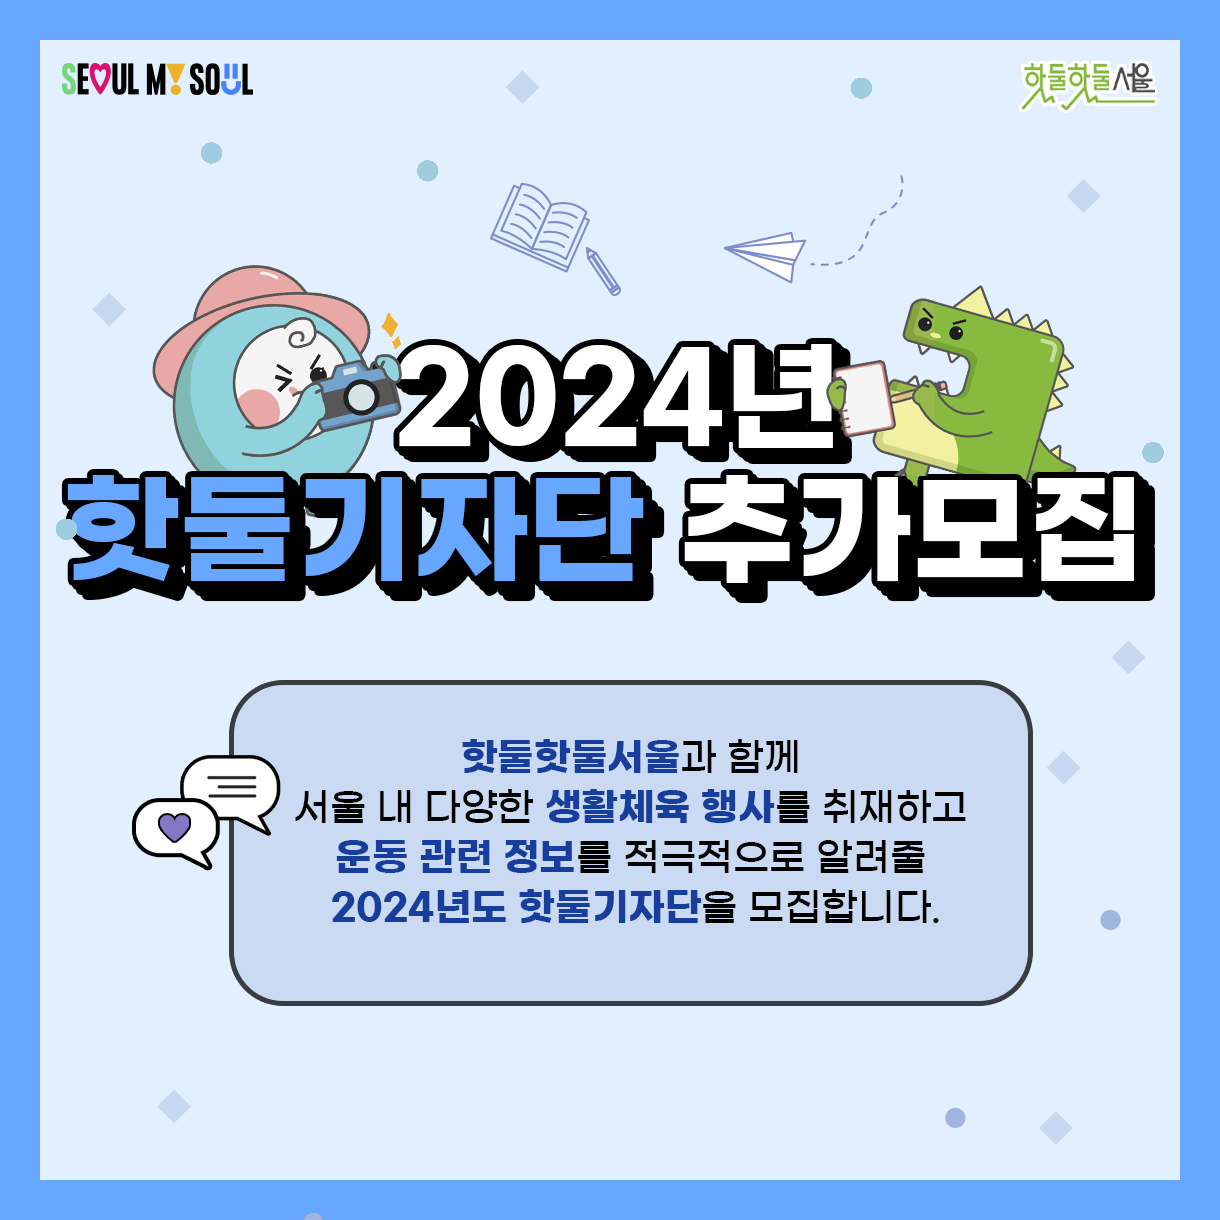 
2024년 핫둘기자단 추가모집
핫둘핫둘서울과 함께
서울 내 다양한 생활체육 행사를 취재하고
운동 관련 정보를 적극적으로 알려줄
2024년도 핫둘기자단을 모집합니다.
